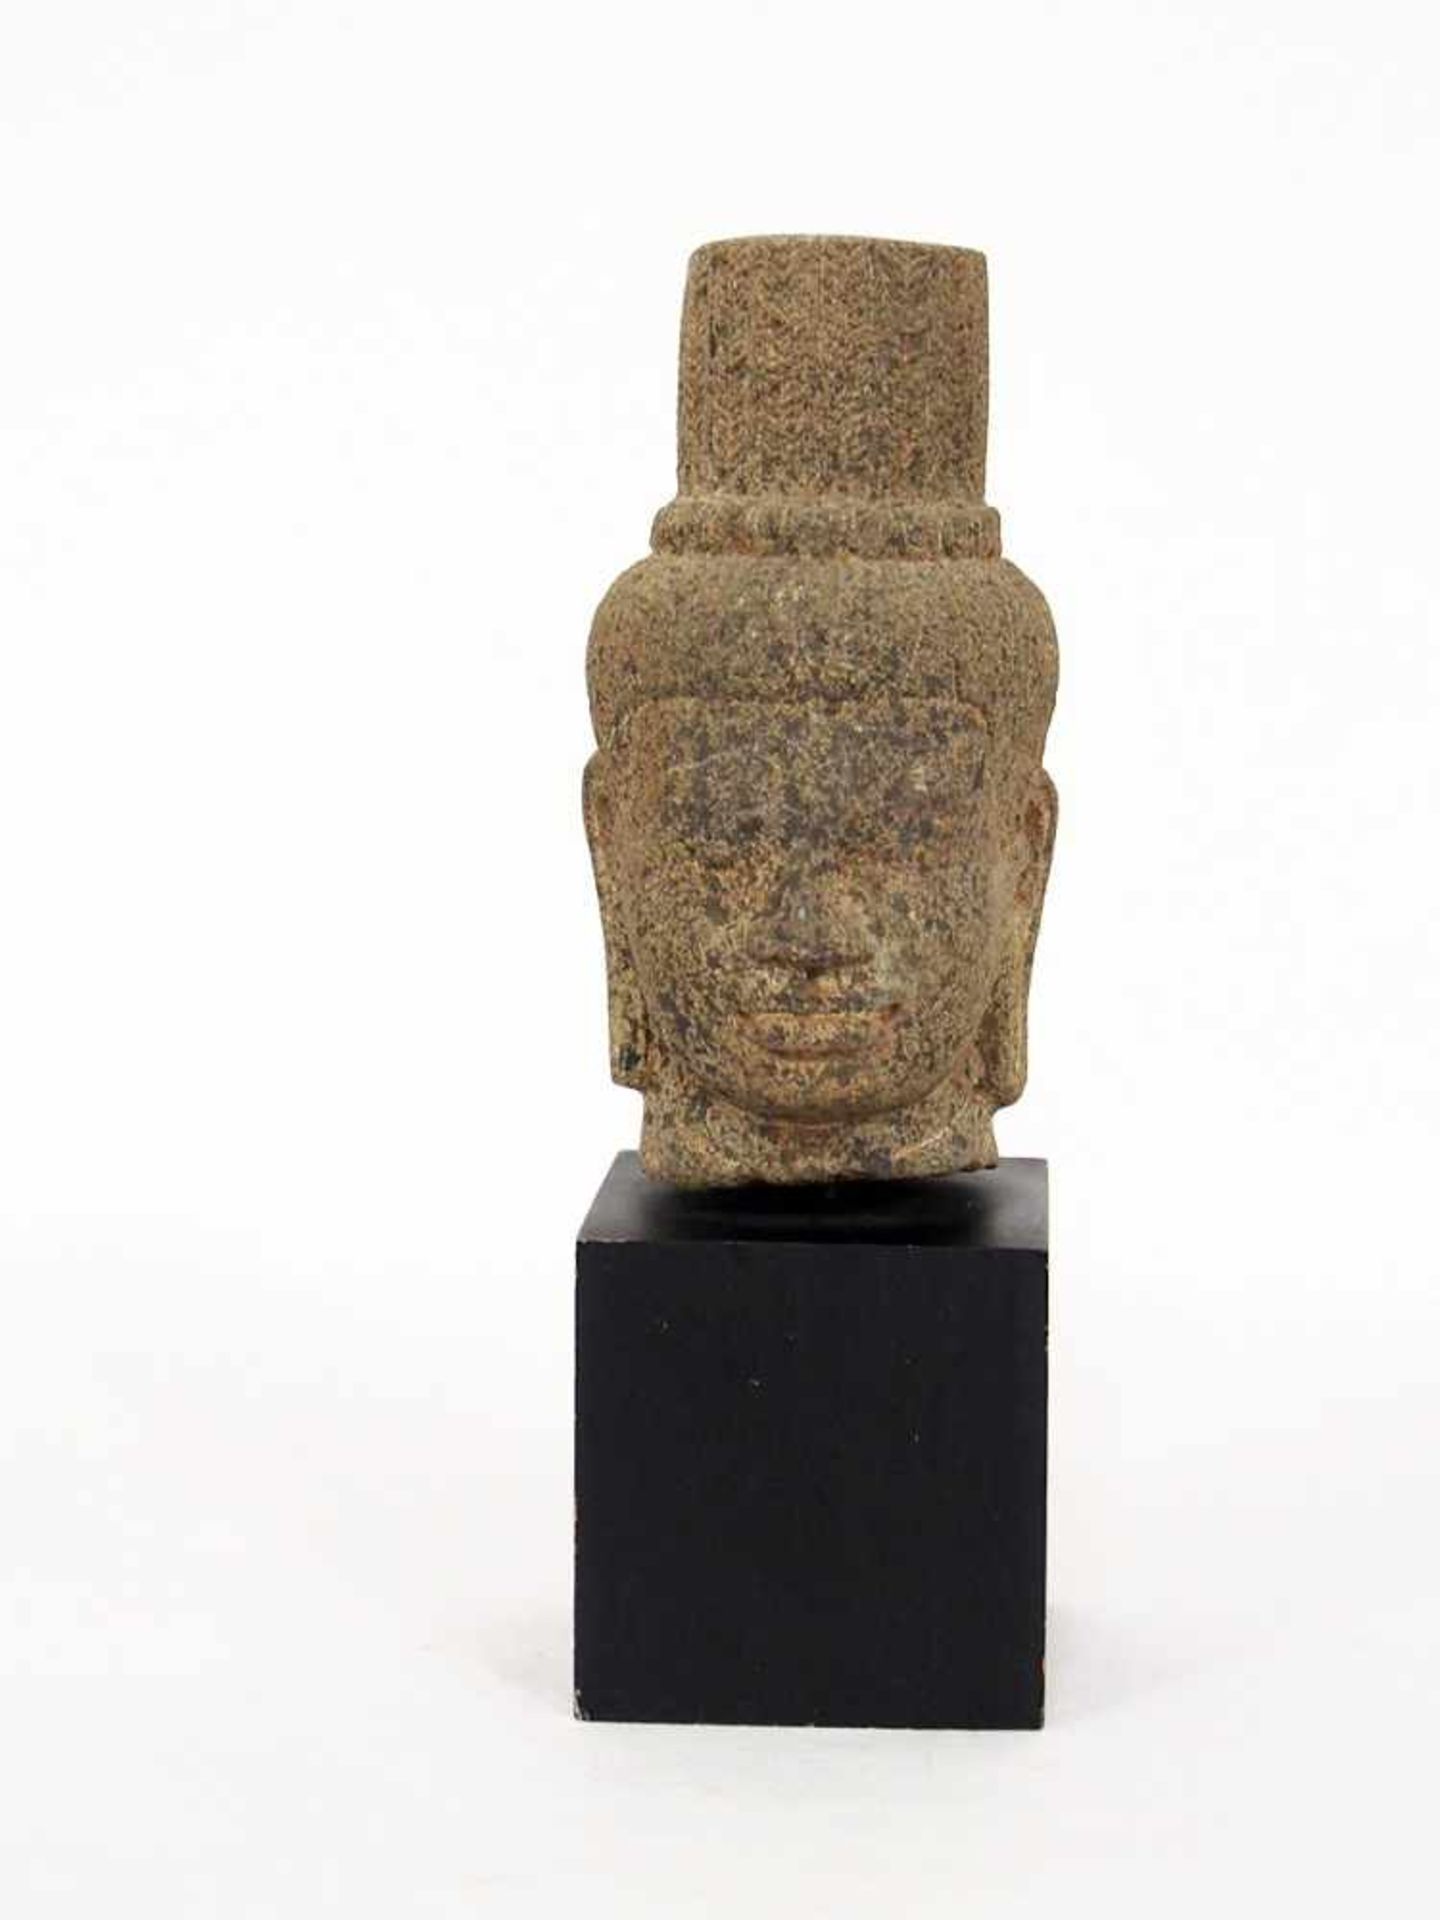 Buddha-KopfBurma, wohl 17. Jh., Stein, Höhe 17 cm, Sockel vorhanden (aus dem Nachlass des Malers